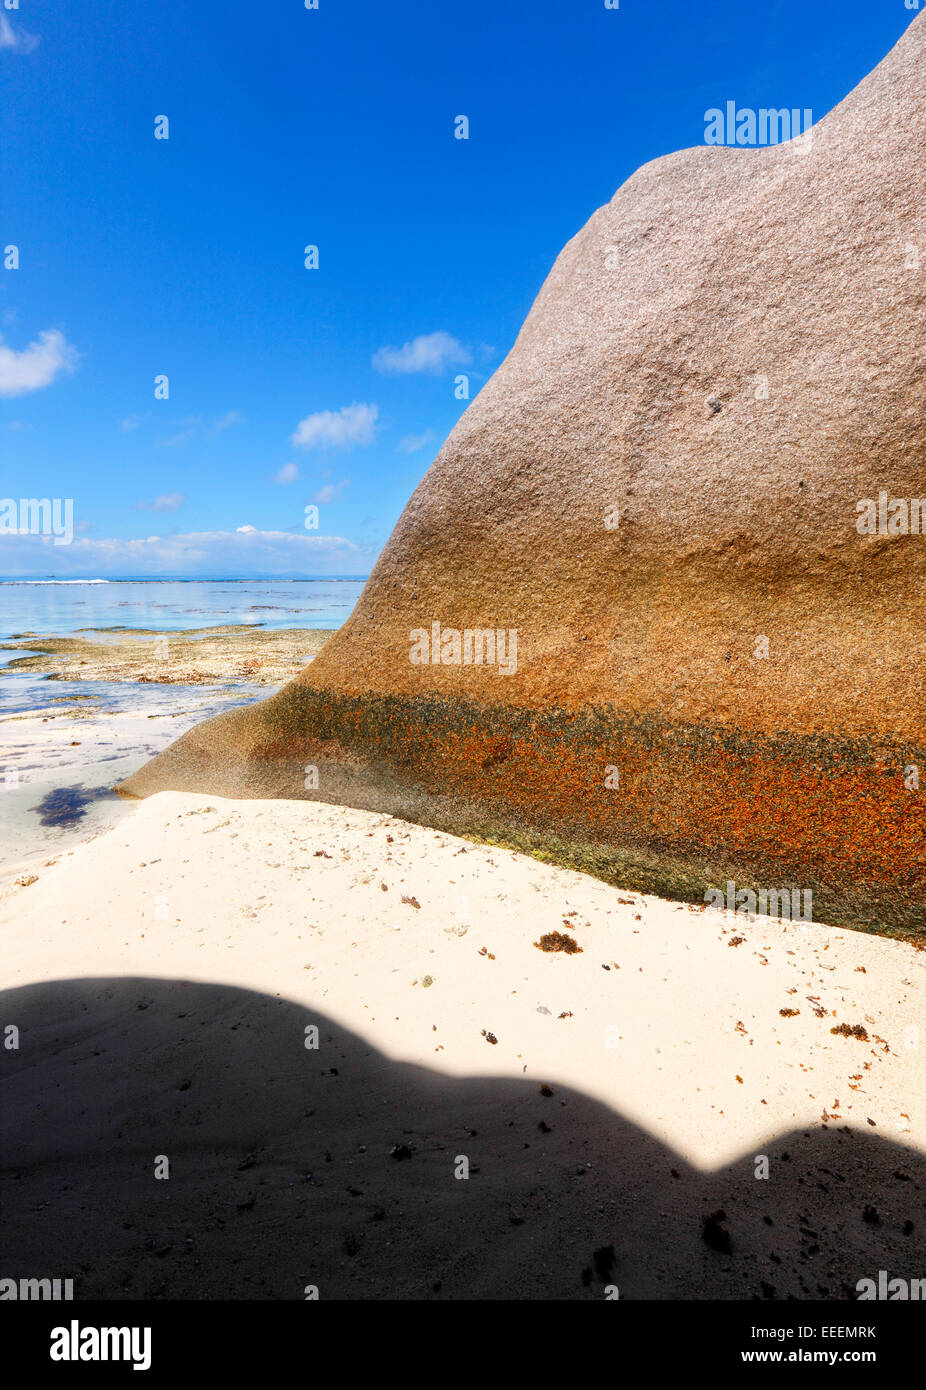 Rocher de granit sur la plage de sable, l'île de La Digue, Seychelles Banque D'Images